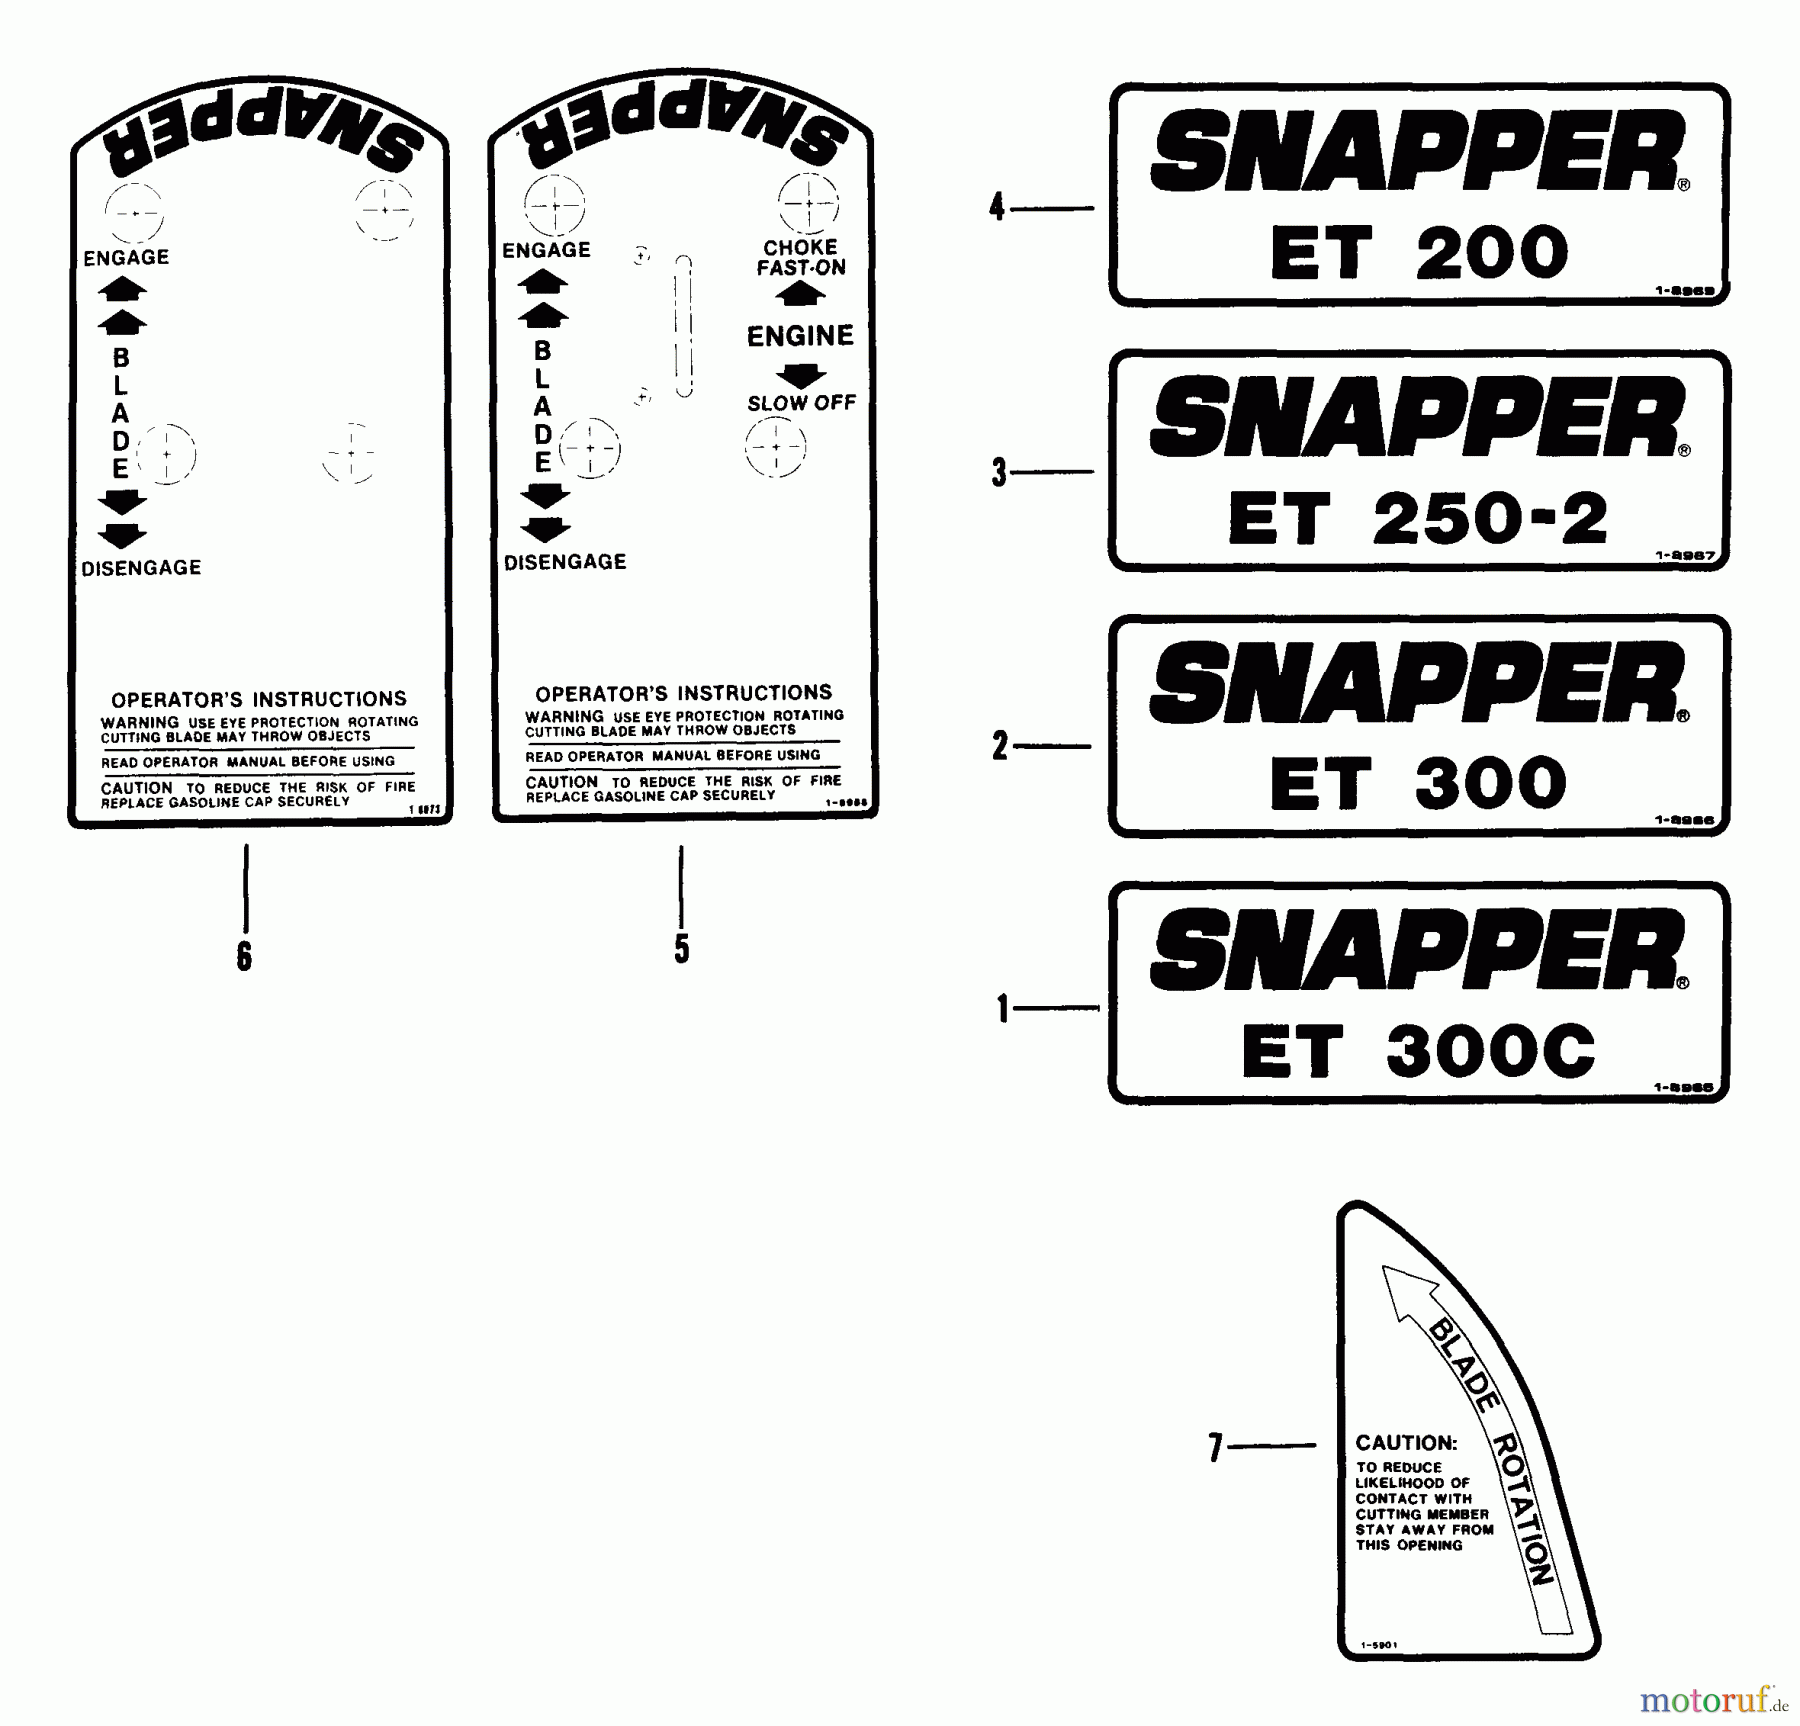  Snapper Kantenschneider ET200B - Snapper Edger Trimmer, 2 HP, Series 0 Decals